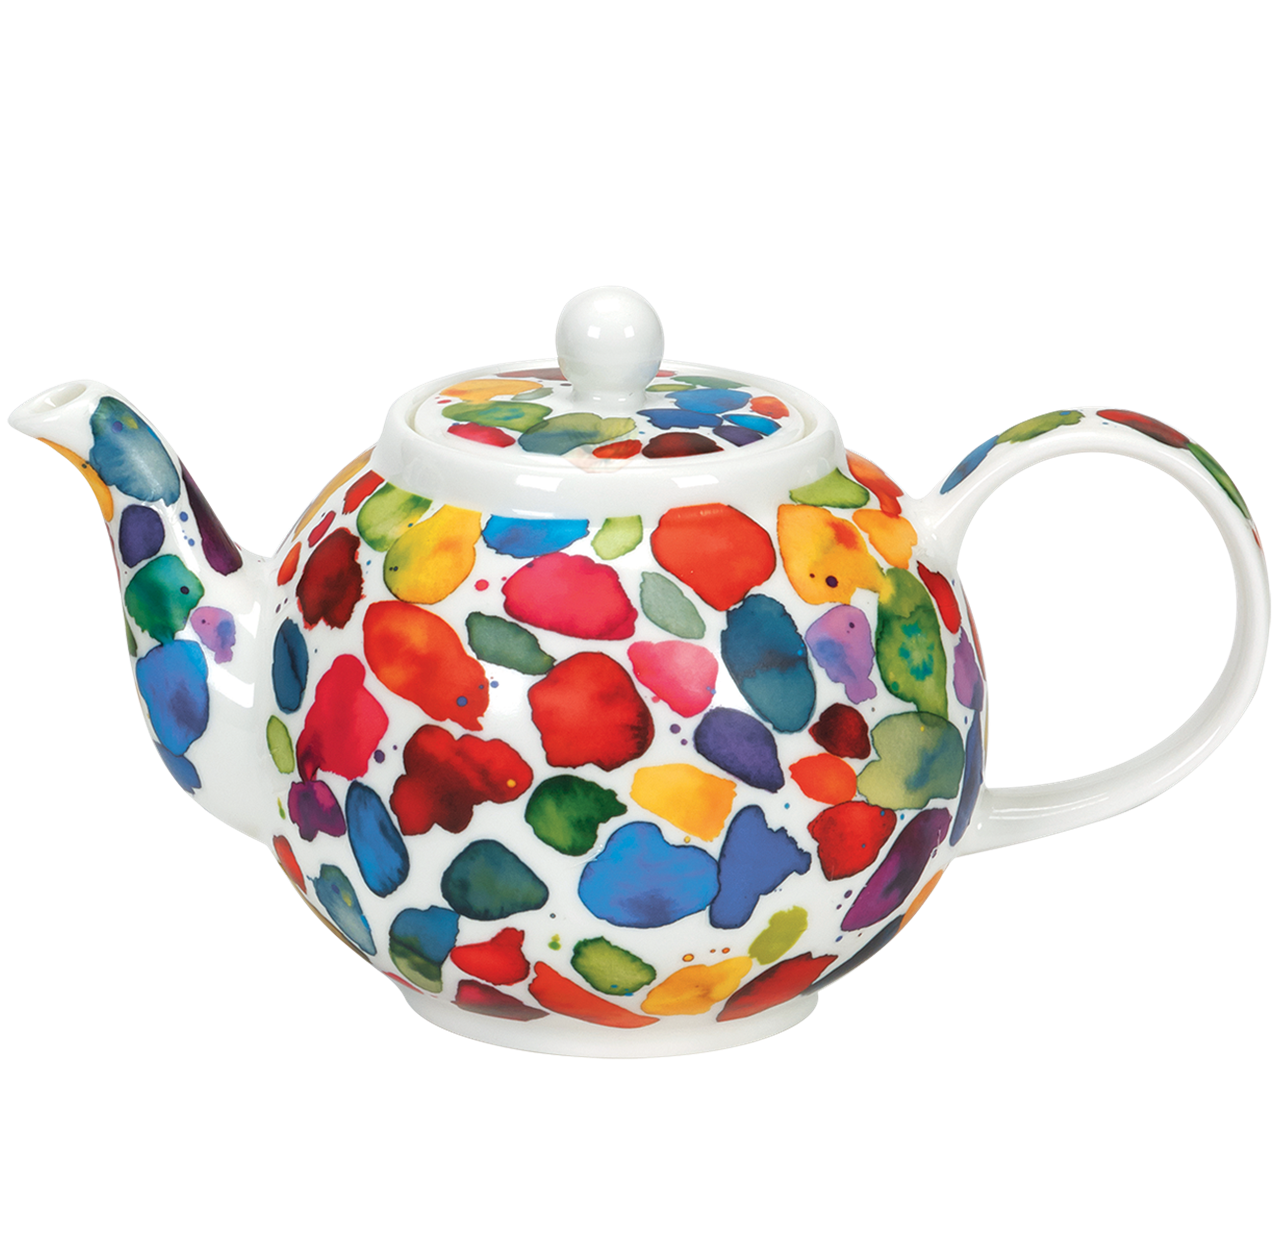 Bild von Dunoon Teapot Large Blobs